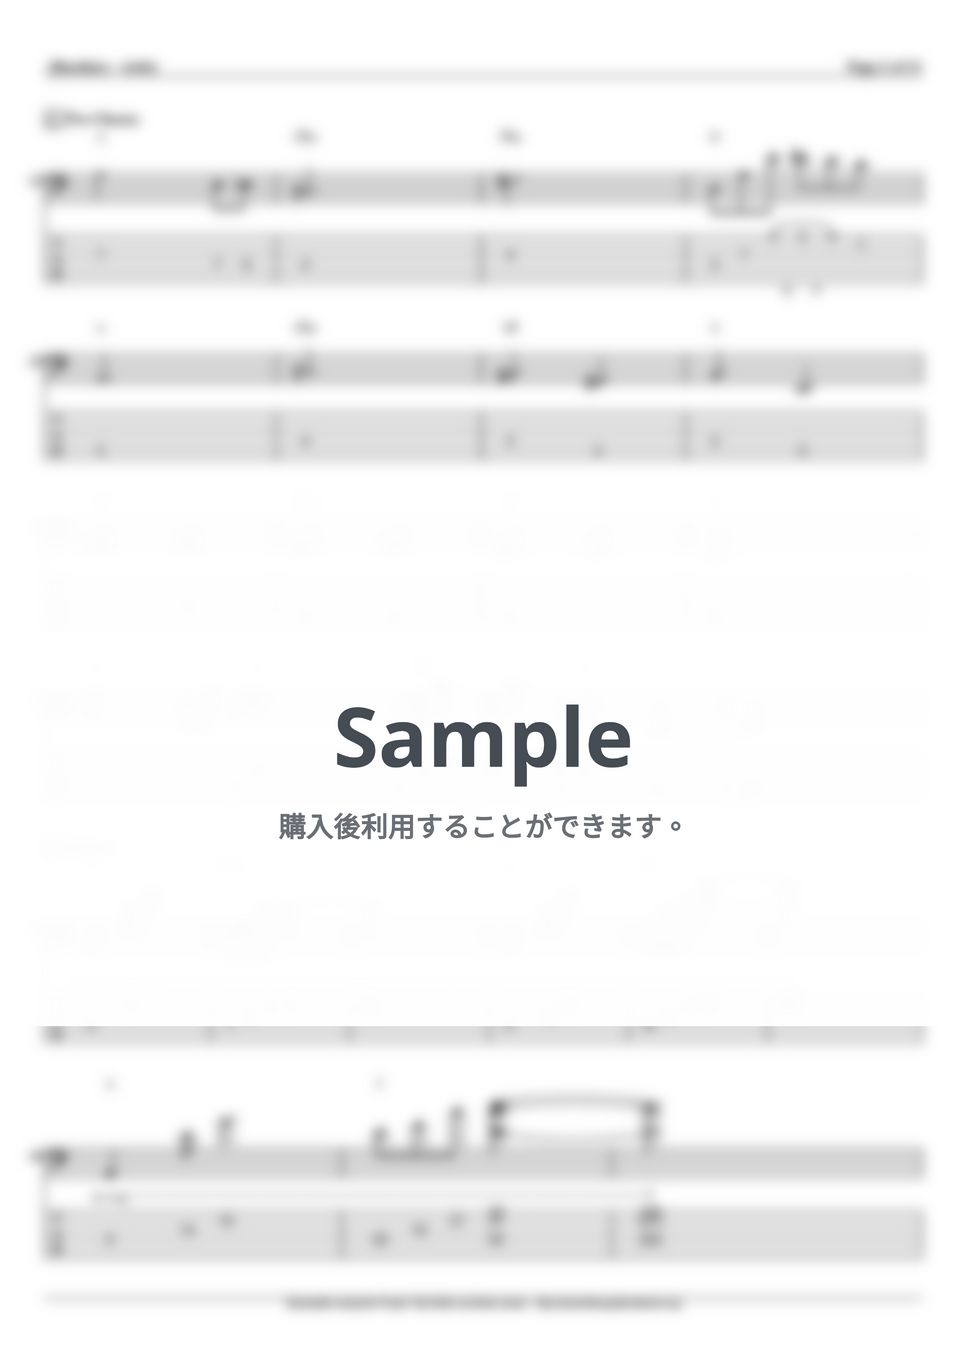 上原ひろみ - Wind Song (ベース Tab譜 6弦) by T’s bass score